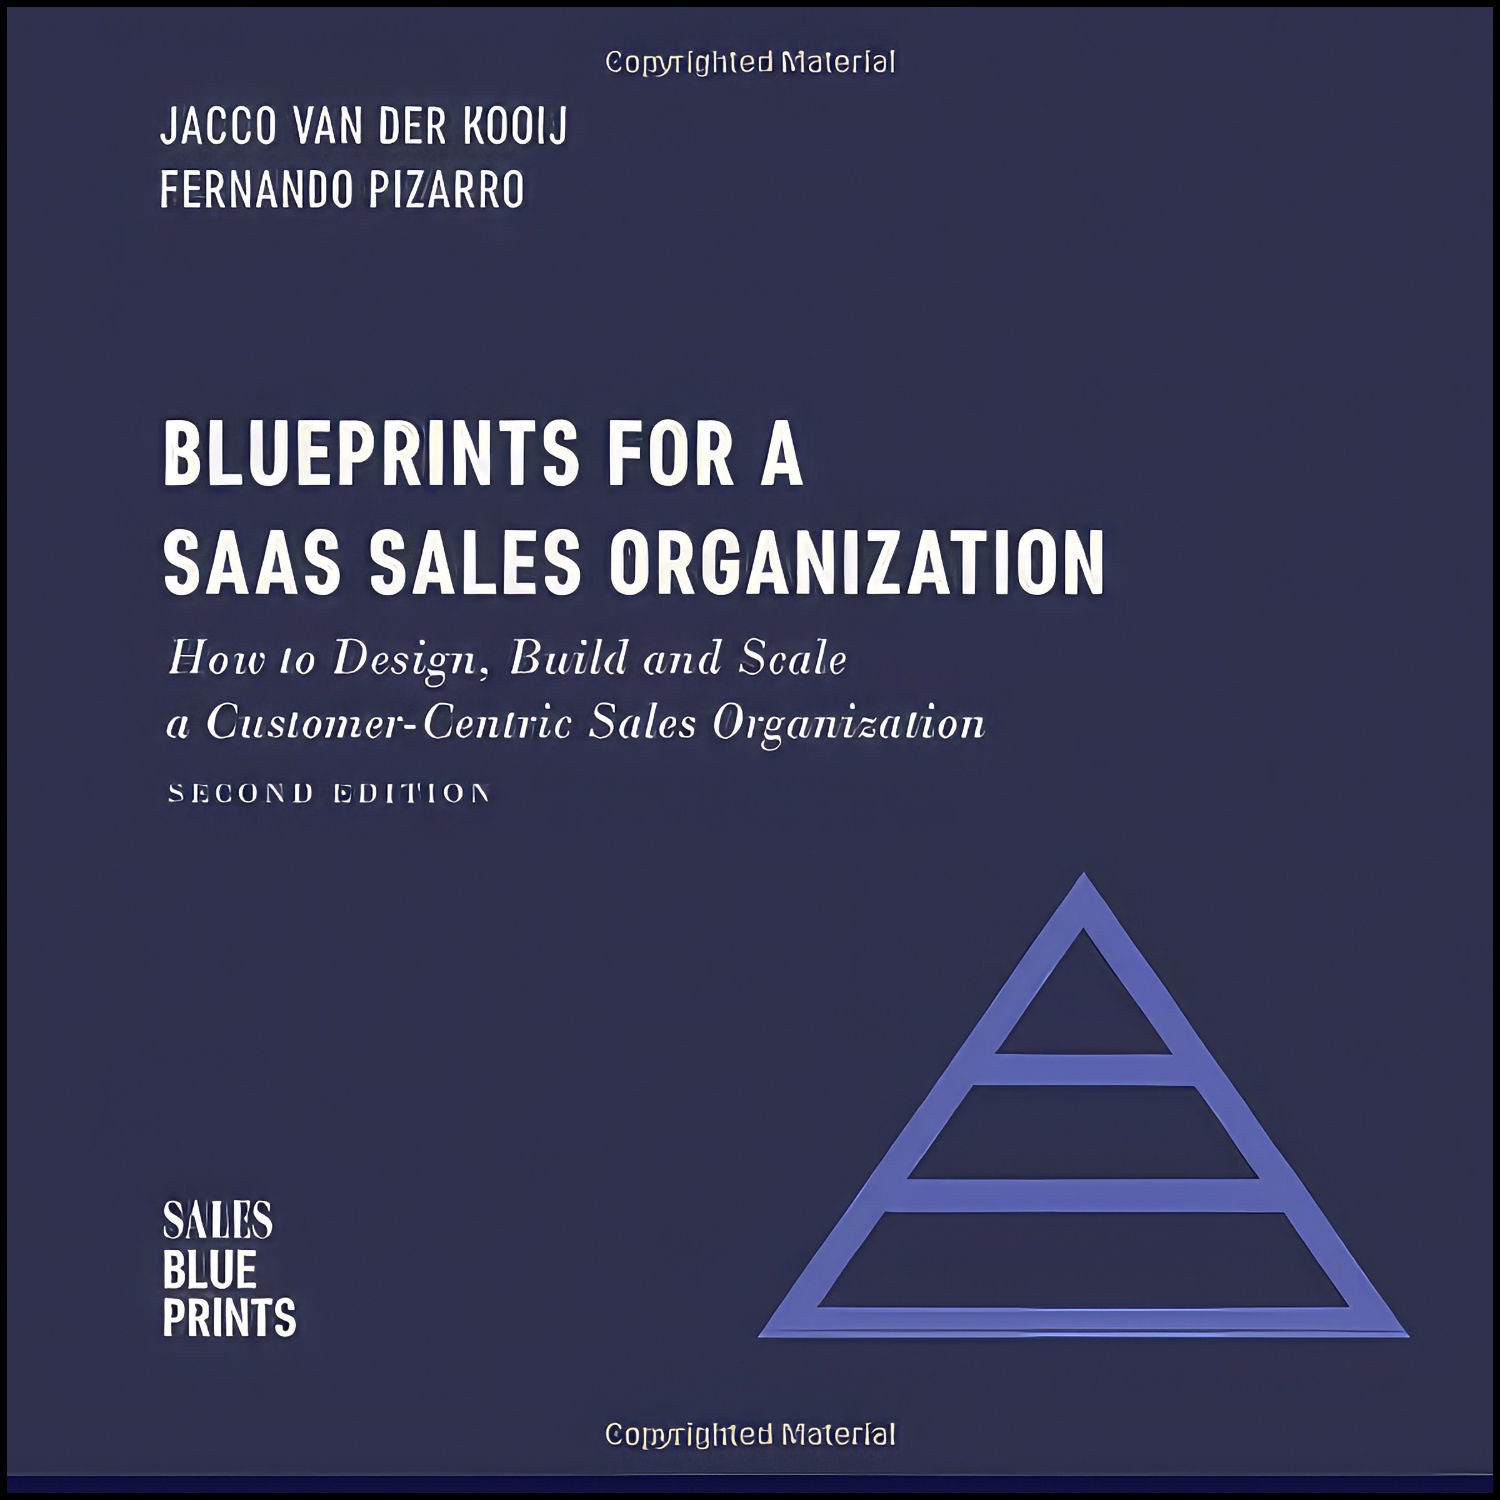 کتاب Blueprints for a SaaS Sales Organization اثر جمعي از نويسندگان انتشارات بله